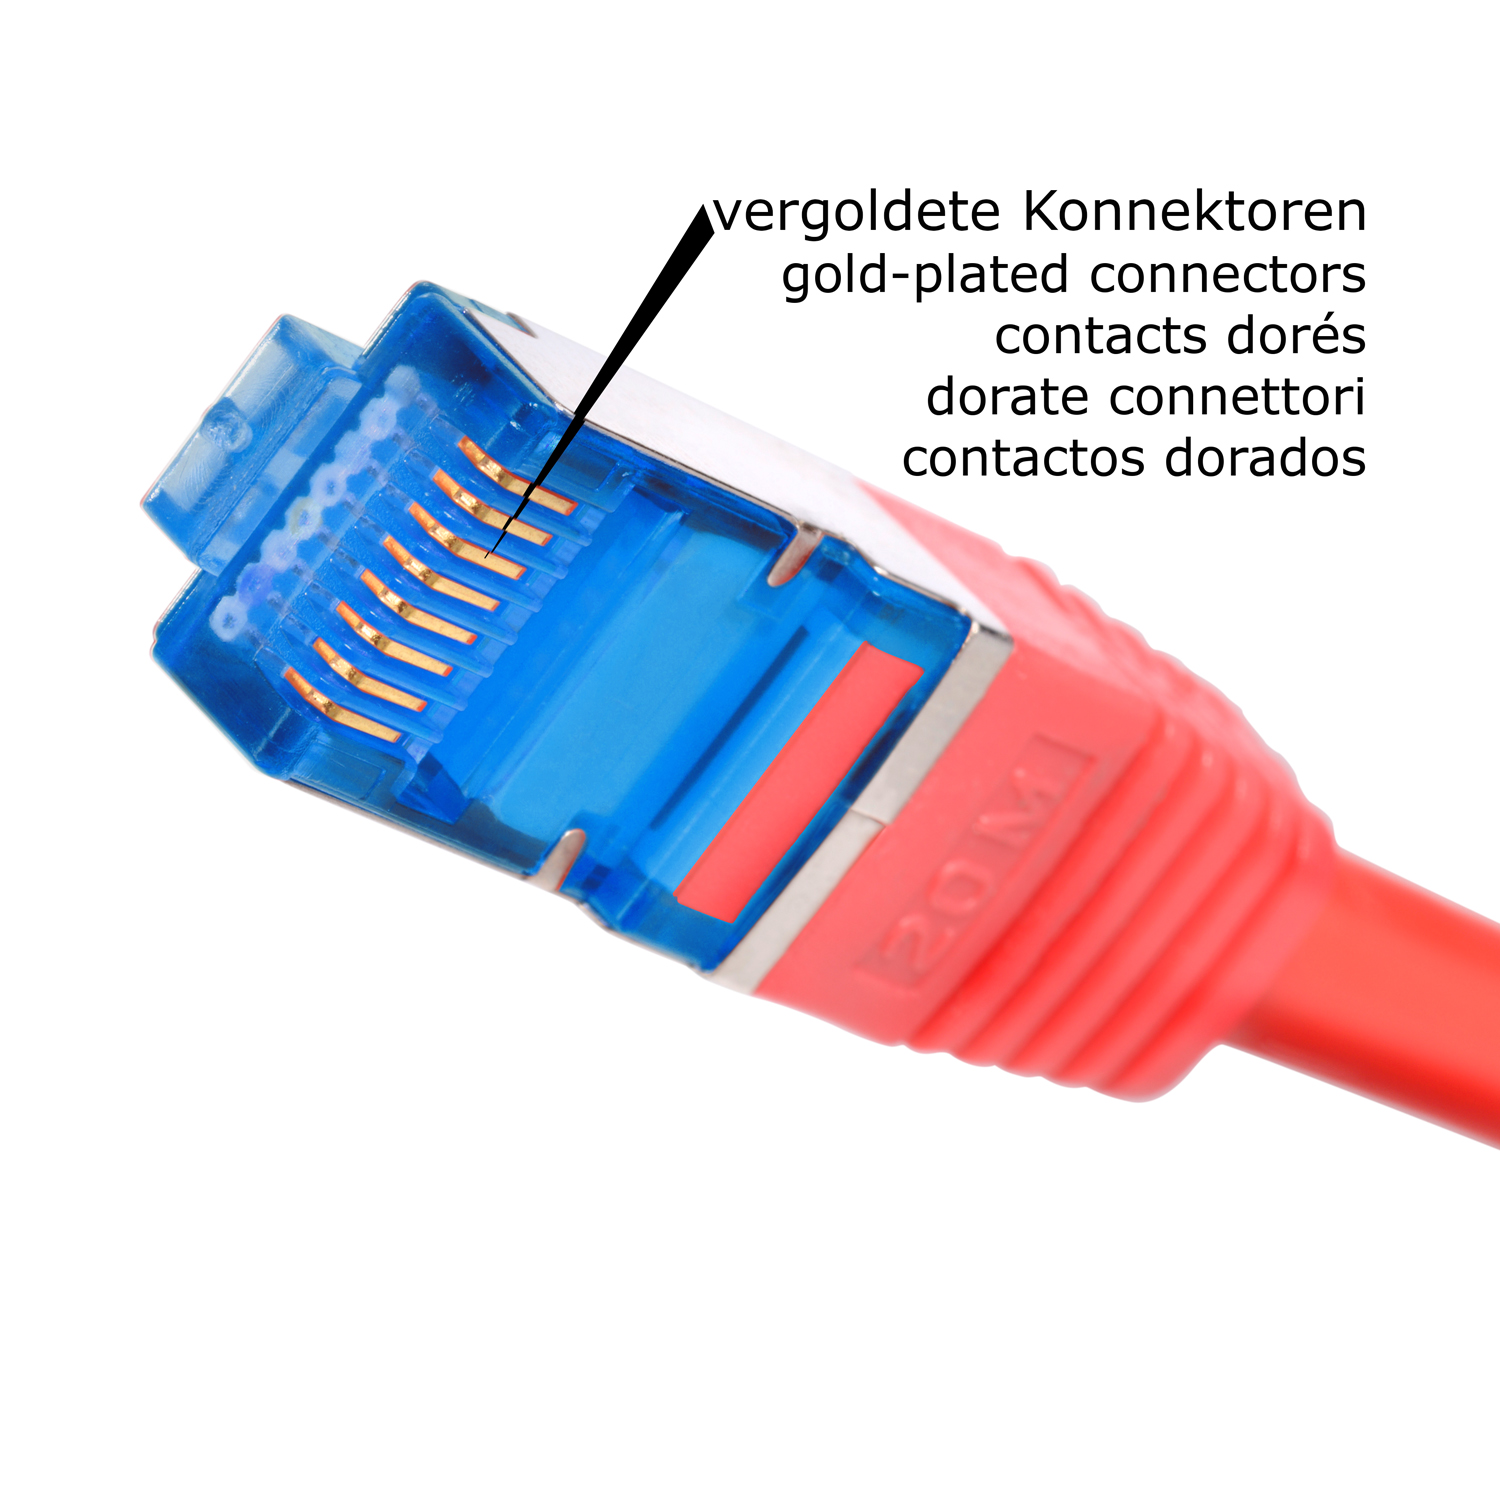 TPFNET 1m S/FTP 10GBit, 1 rot, Netzwerkkabel / Patchkabel Netzwerkkabel, m